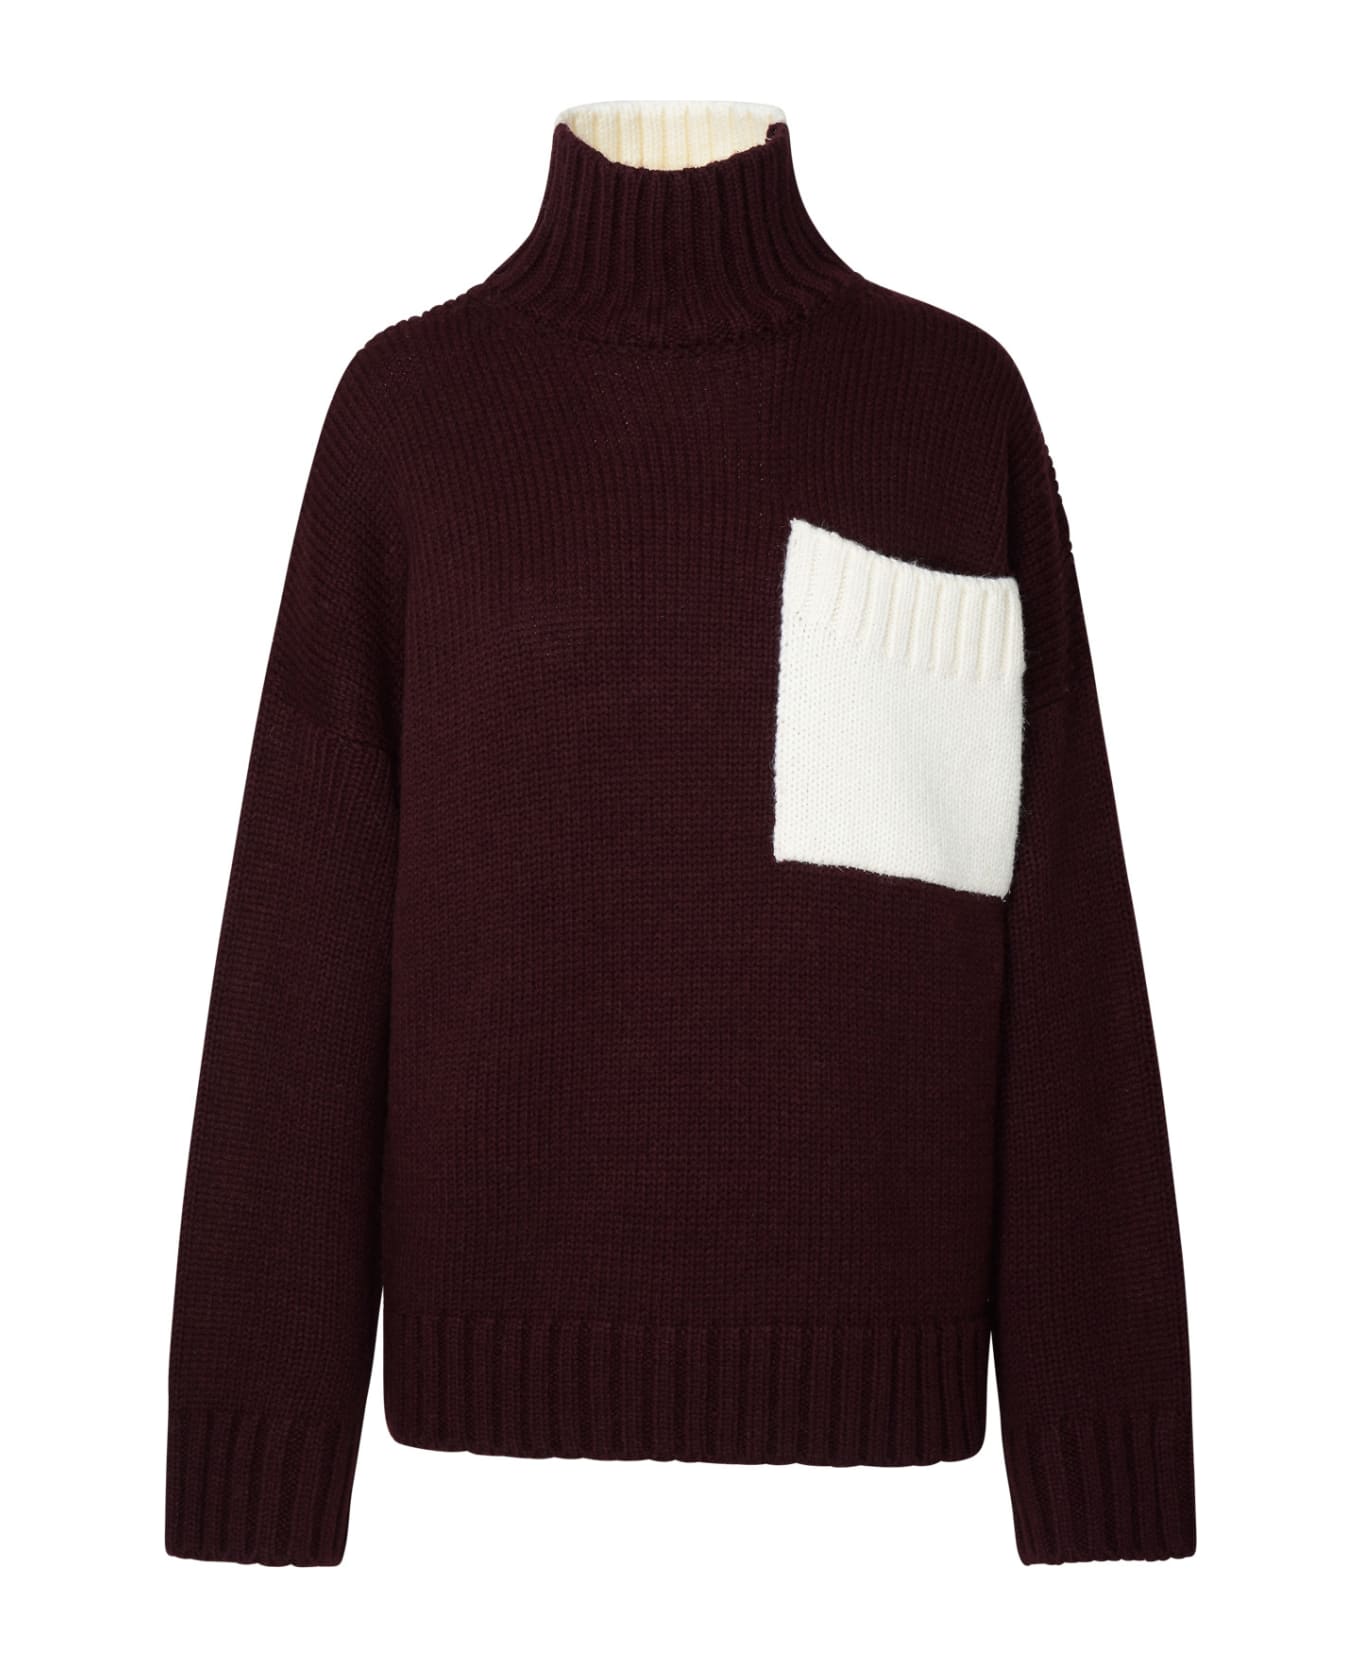 J.W. Anderson Two-tone Turtleneck Sweater In Alpaca Blend - Bordeaux